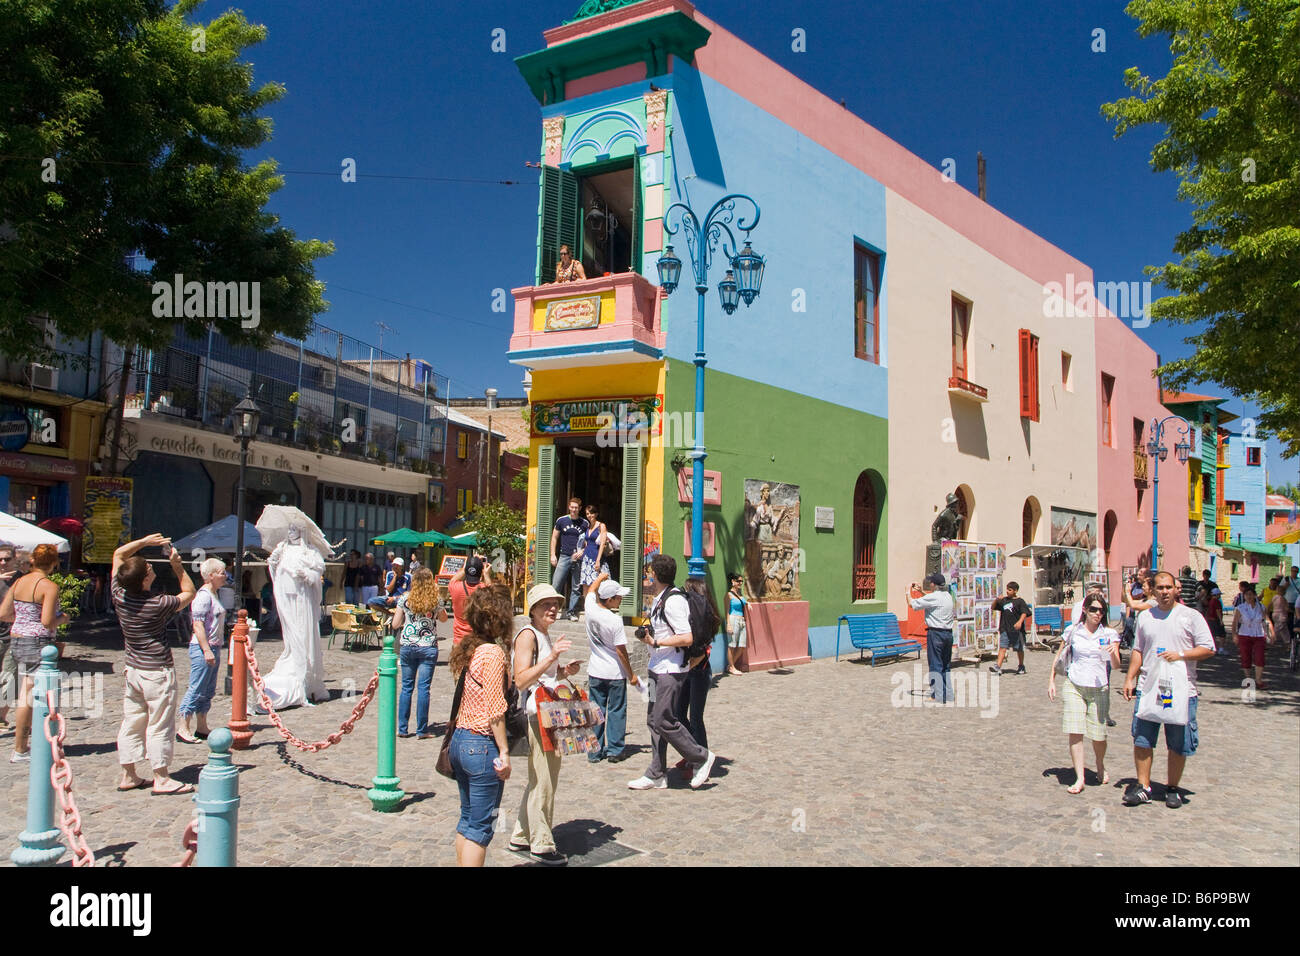 Bunt bunt gestrichenen Häuser aus Holz und Wellblech in La Boca Buenos Aires Argentinien Südamerika Stockfoto